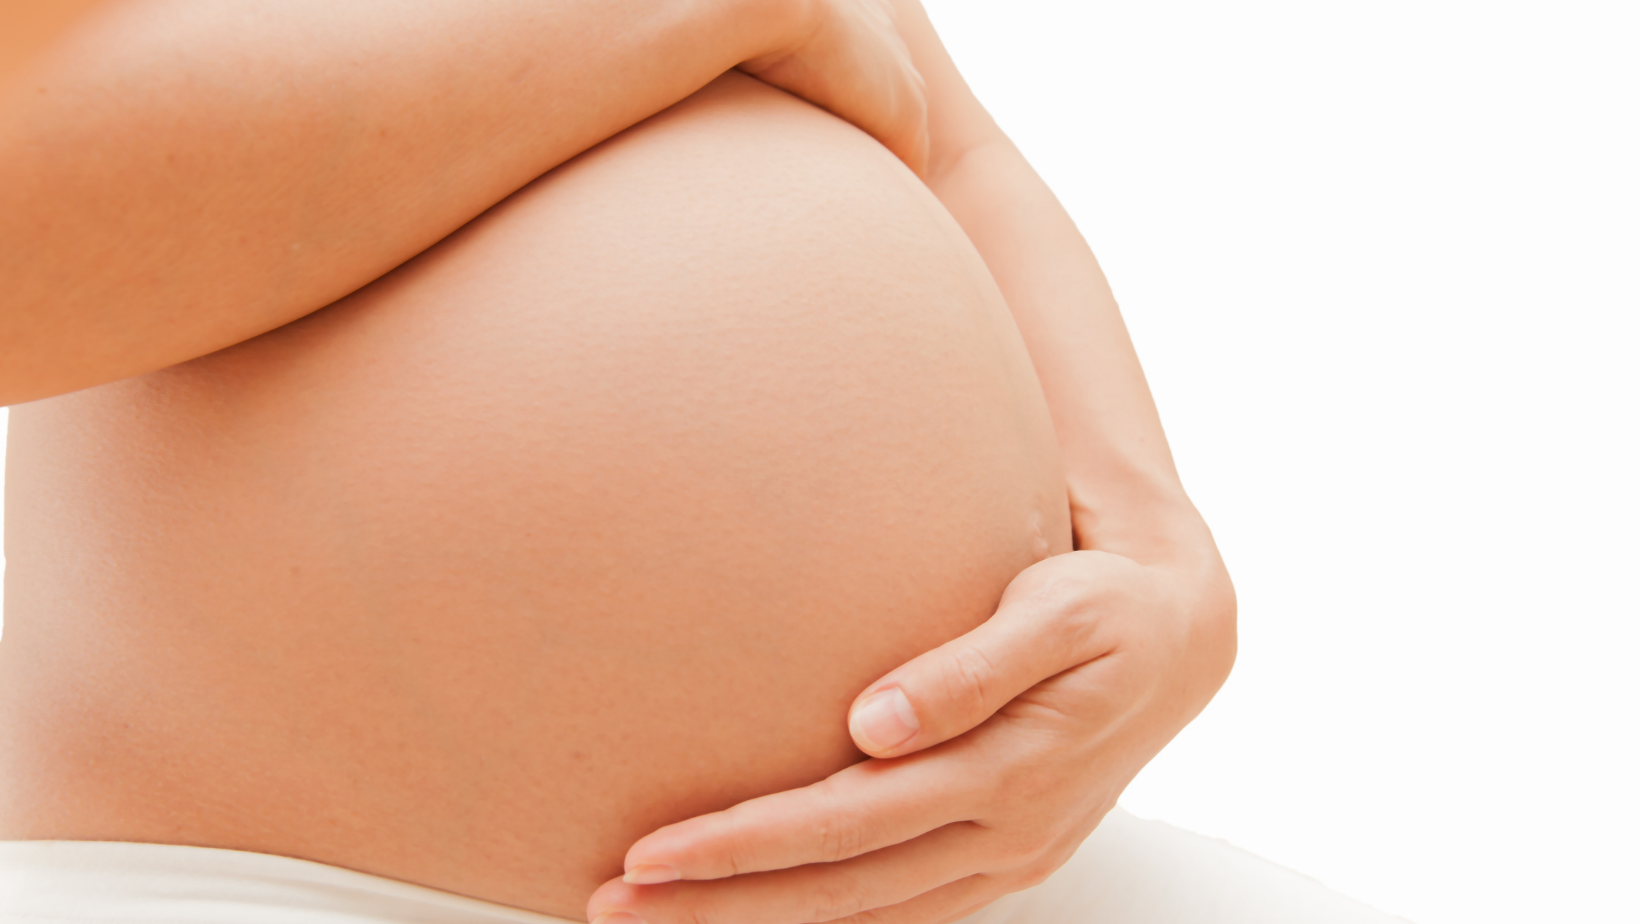 γονιμότητα & εγκυμοσύνη σε προχωρημένη ηλικία